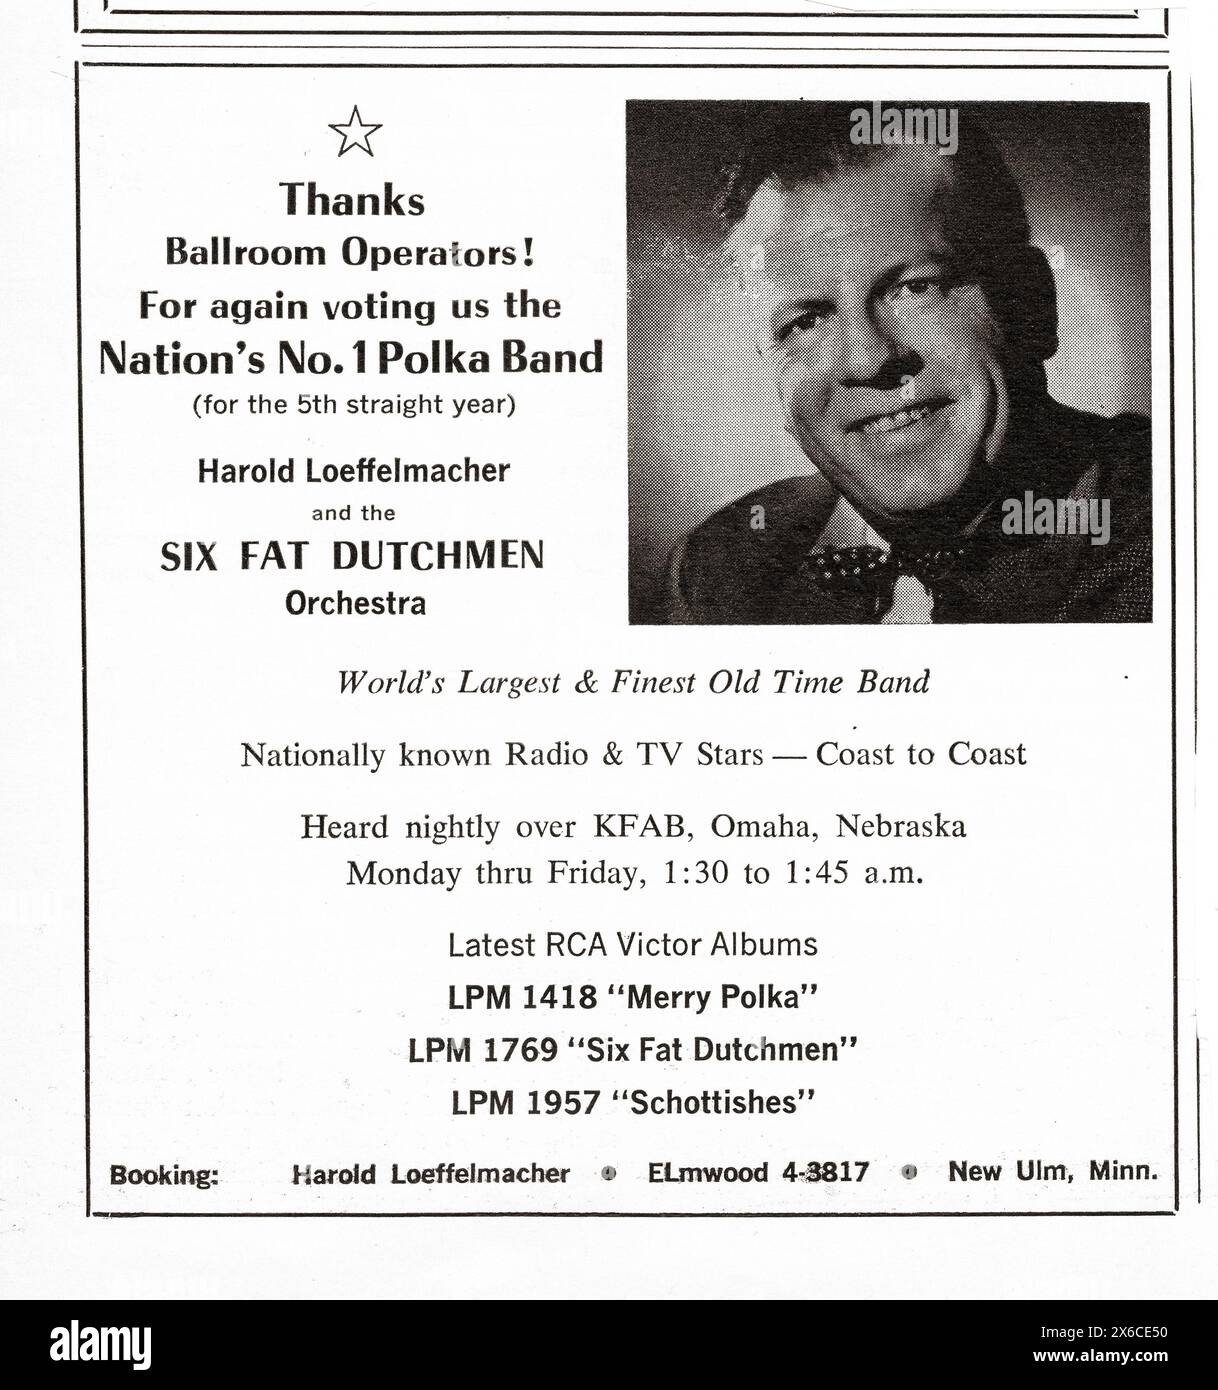 Une publicité destinée aux bookers de salle de bal dans un magazine du début des années 1960 pour Harold Loeffelmacher et le six Fat Dutchmen Orchestra, le groupe de Polka des Nations #1 (une phrase que je n'ai jamais écrite auparavant)., Banque D'Images